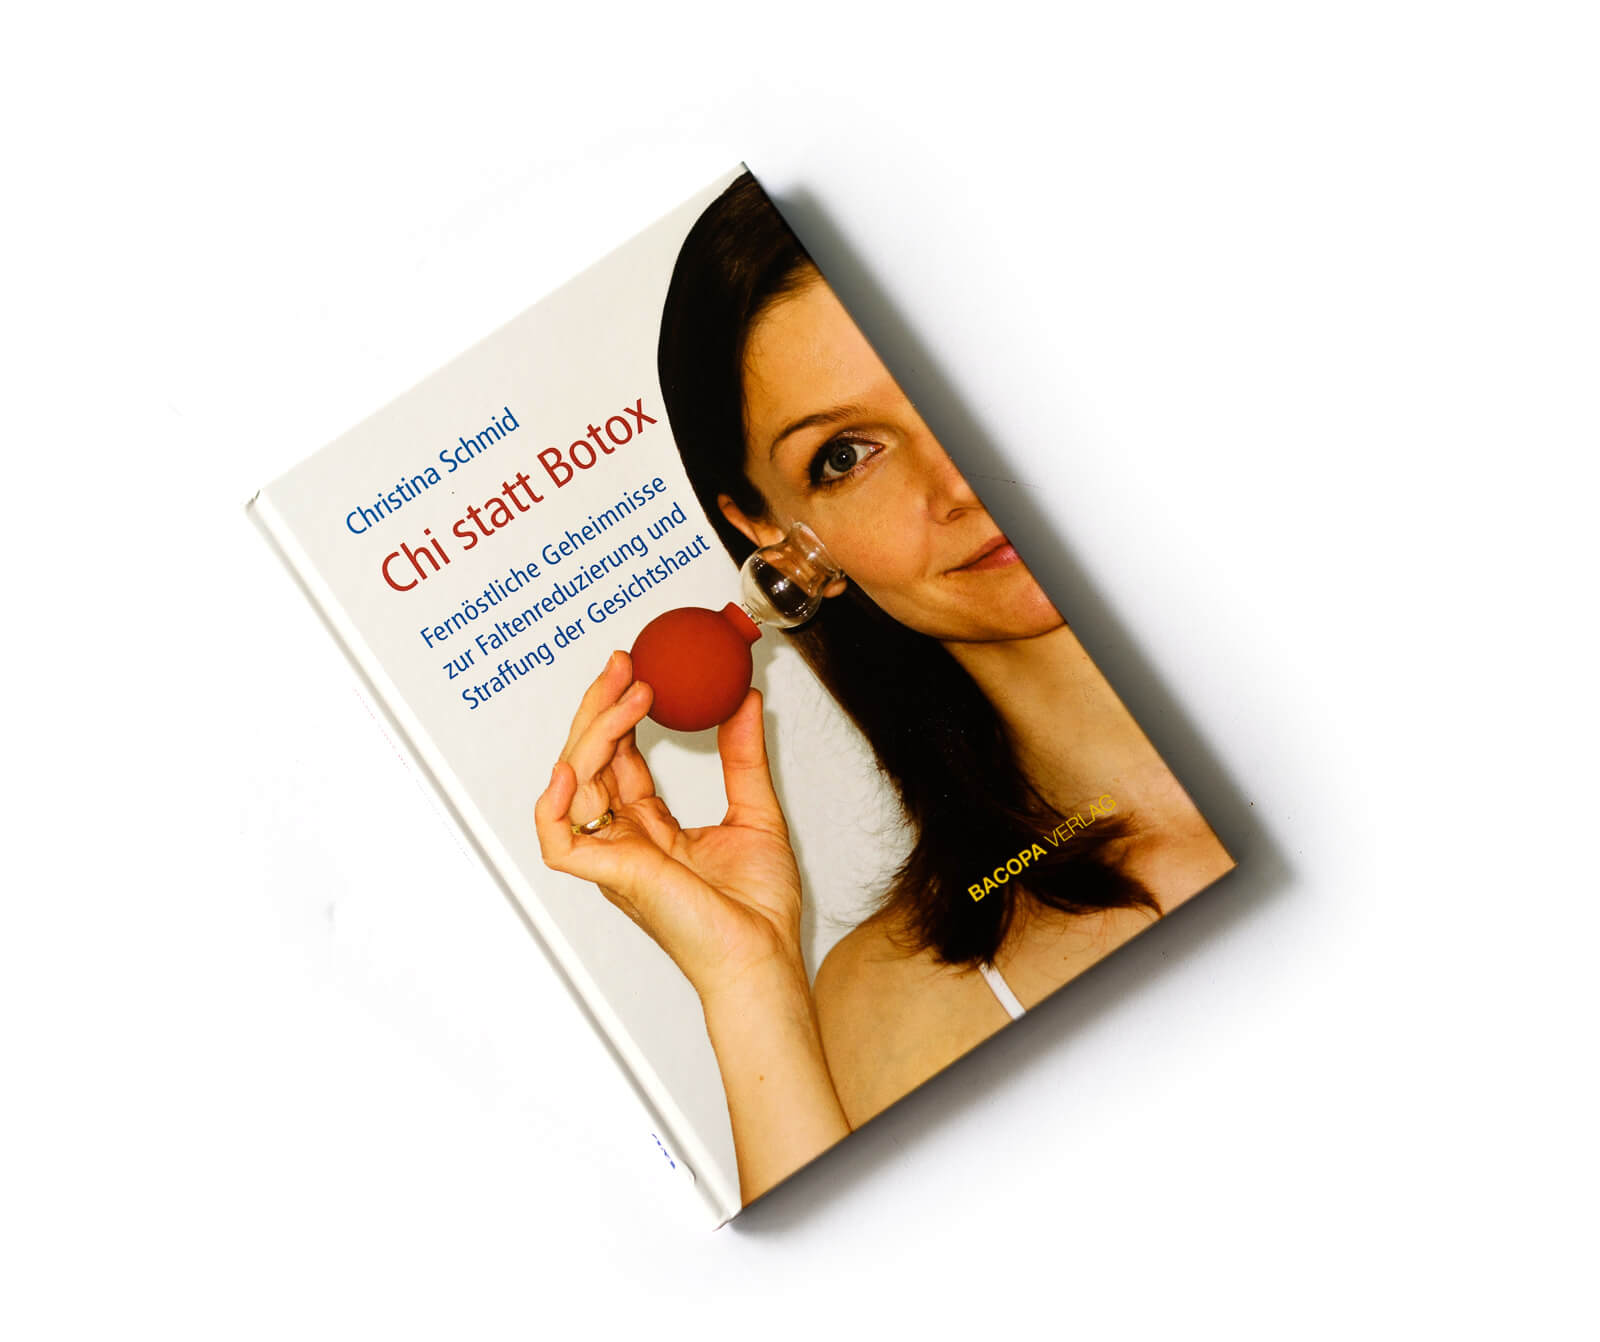 Chi statt Botox: Fernöstliche Geheimnisse zur Faltenreduzierung - Das Buch 